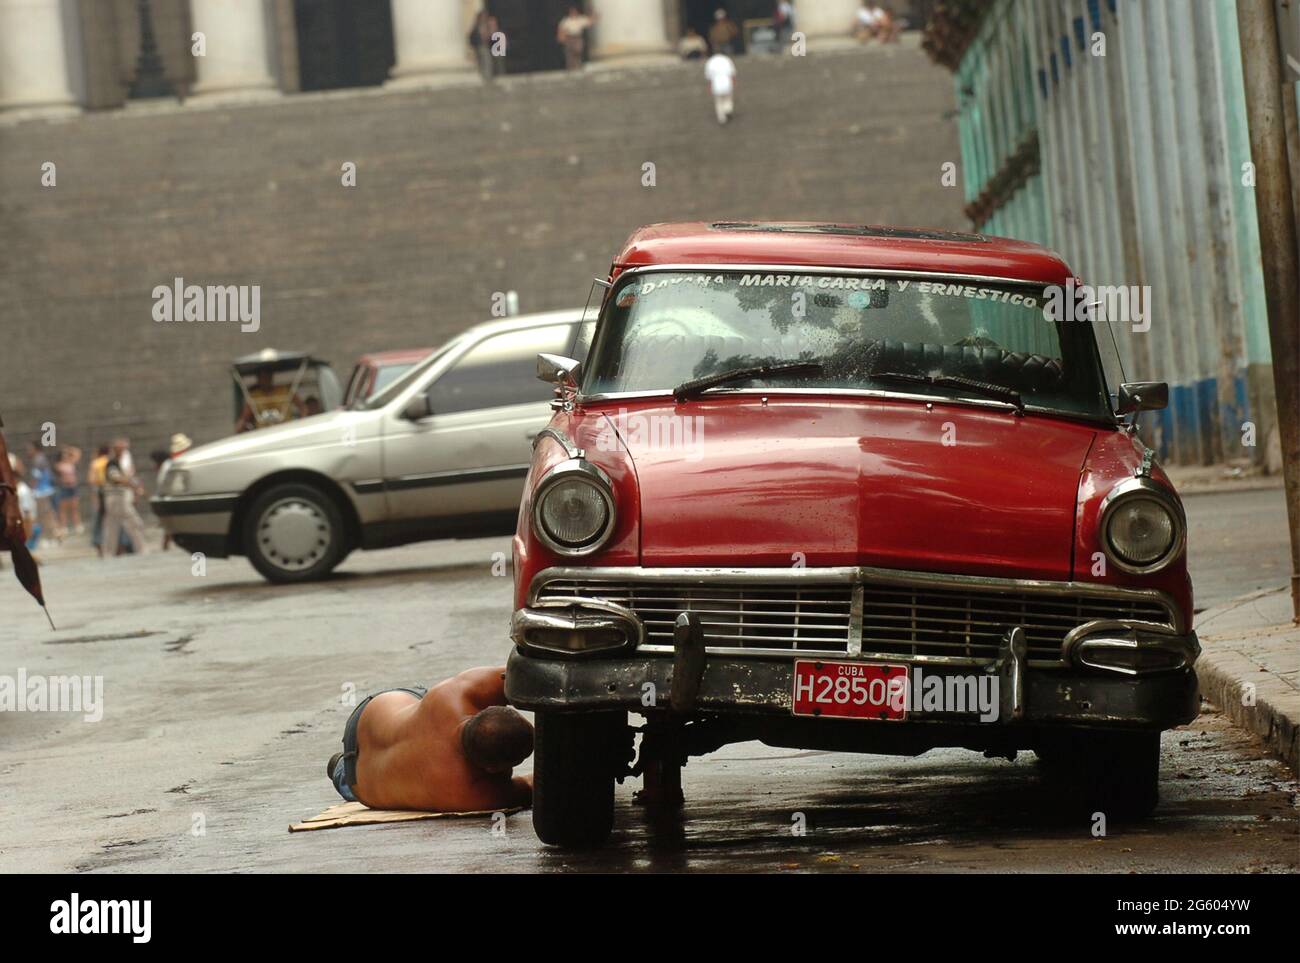 Uomo che ripara la sua vecchia auto per le strade di l'Avana, Cuba maggio 2006. Riparazioni riparazioni riparazione manutenzione uomini cubani classica auto d'epoca riparazione guasti Foto Stock